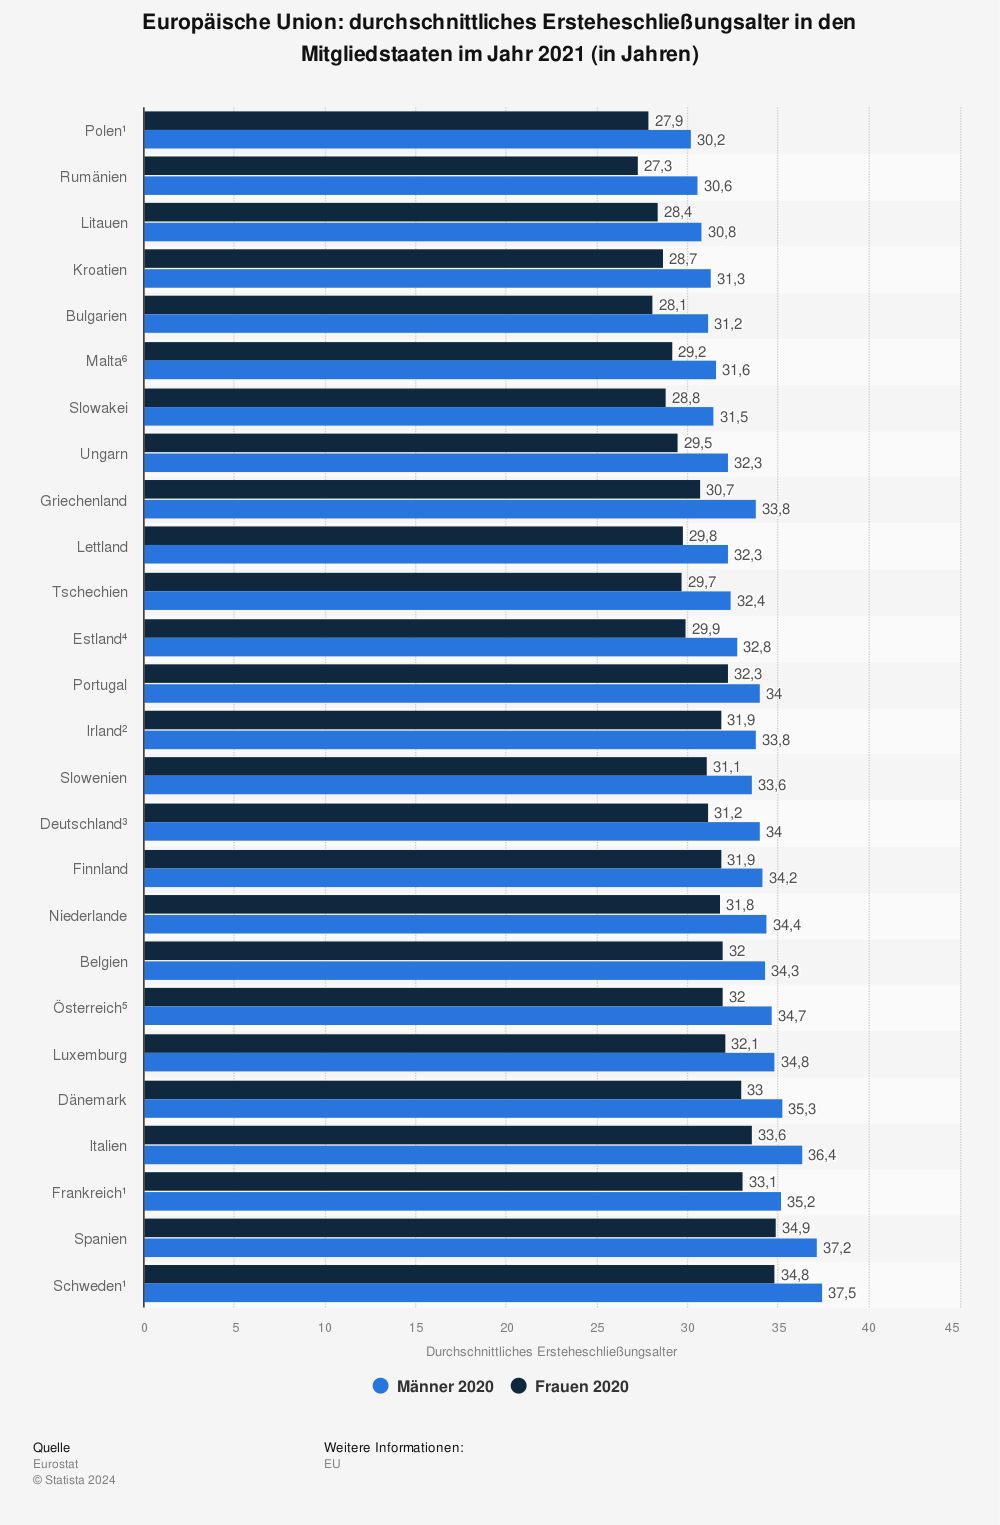 Statistik: Europäische Union: durchschnittliches Ersteheschließungsalter in den Mitgliedstaaten im Jahr 2020 (in Jahren) | Statista